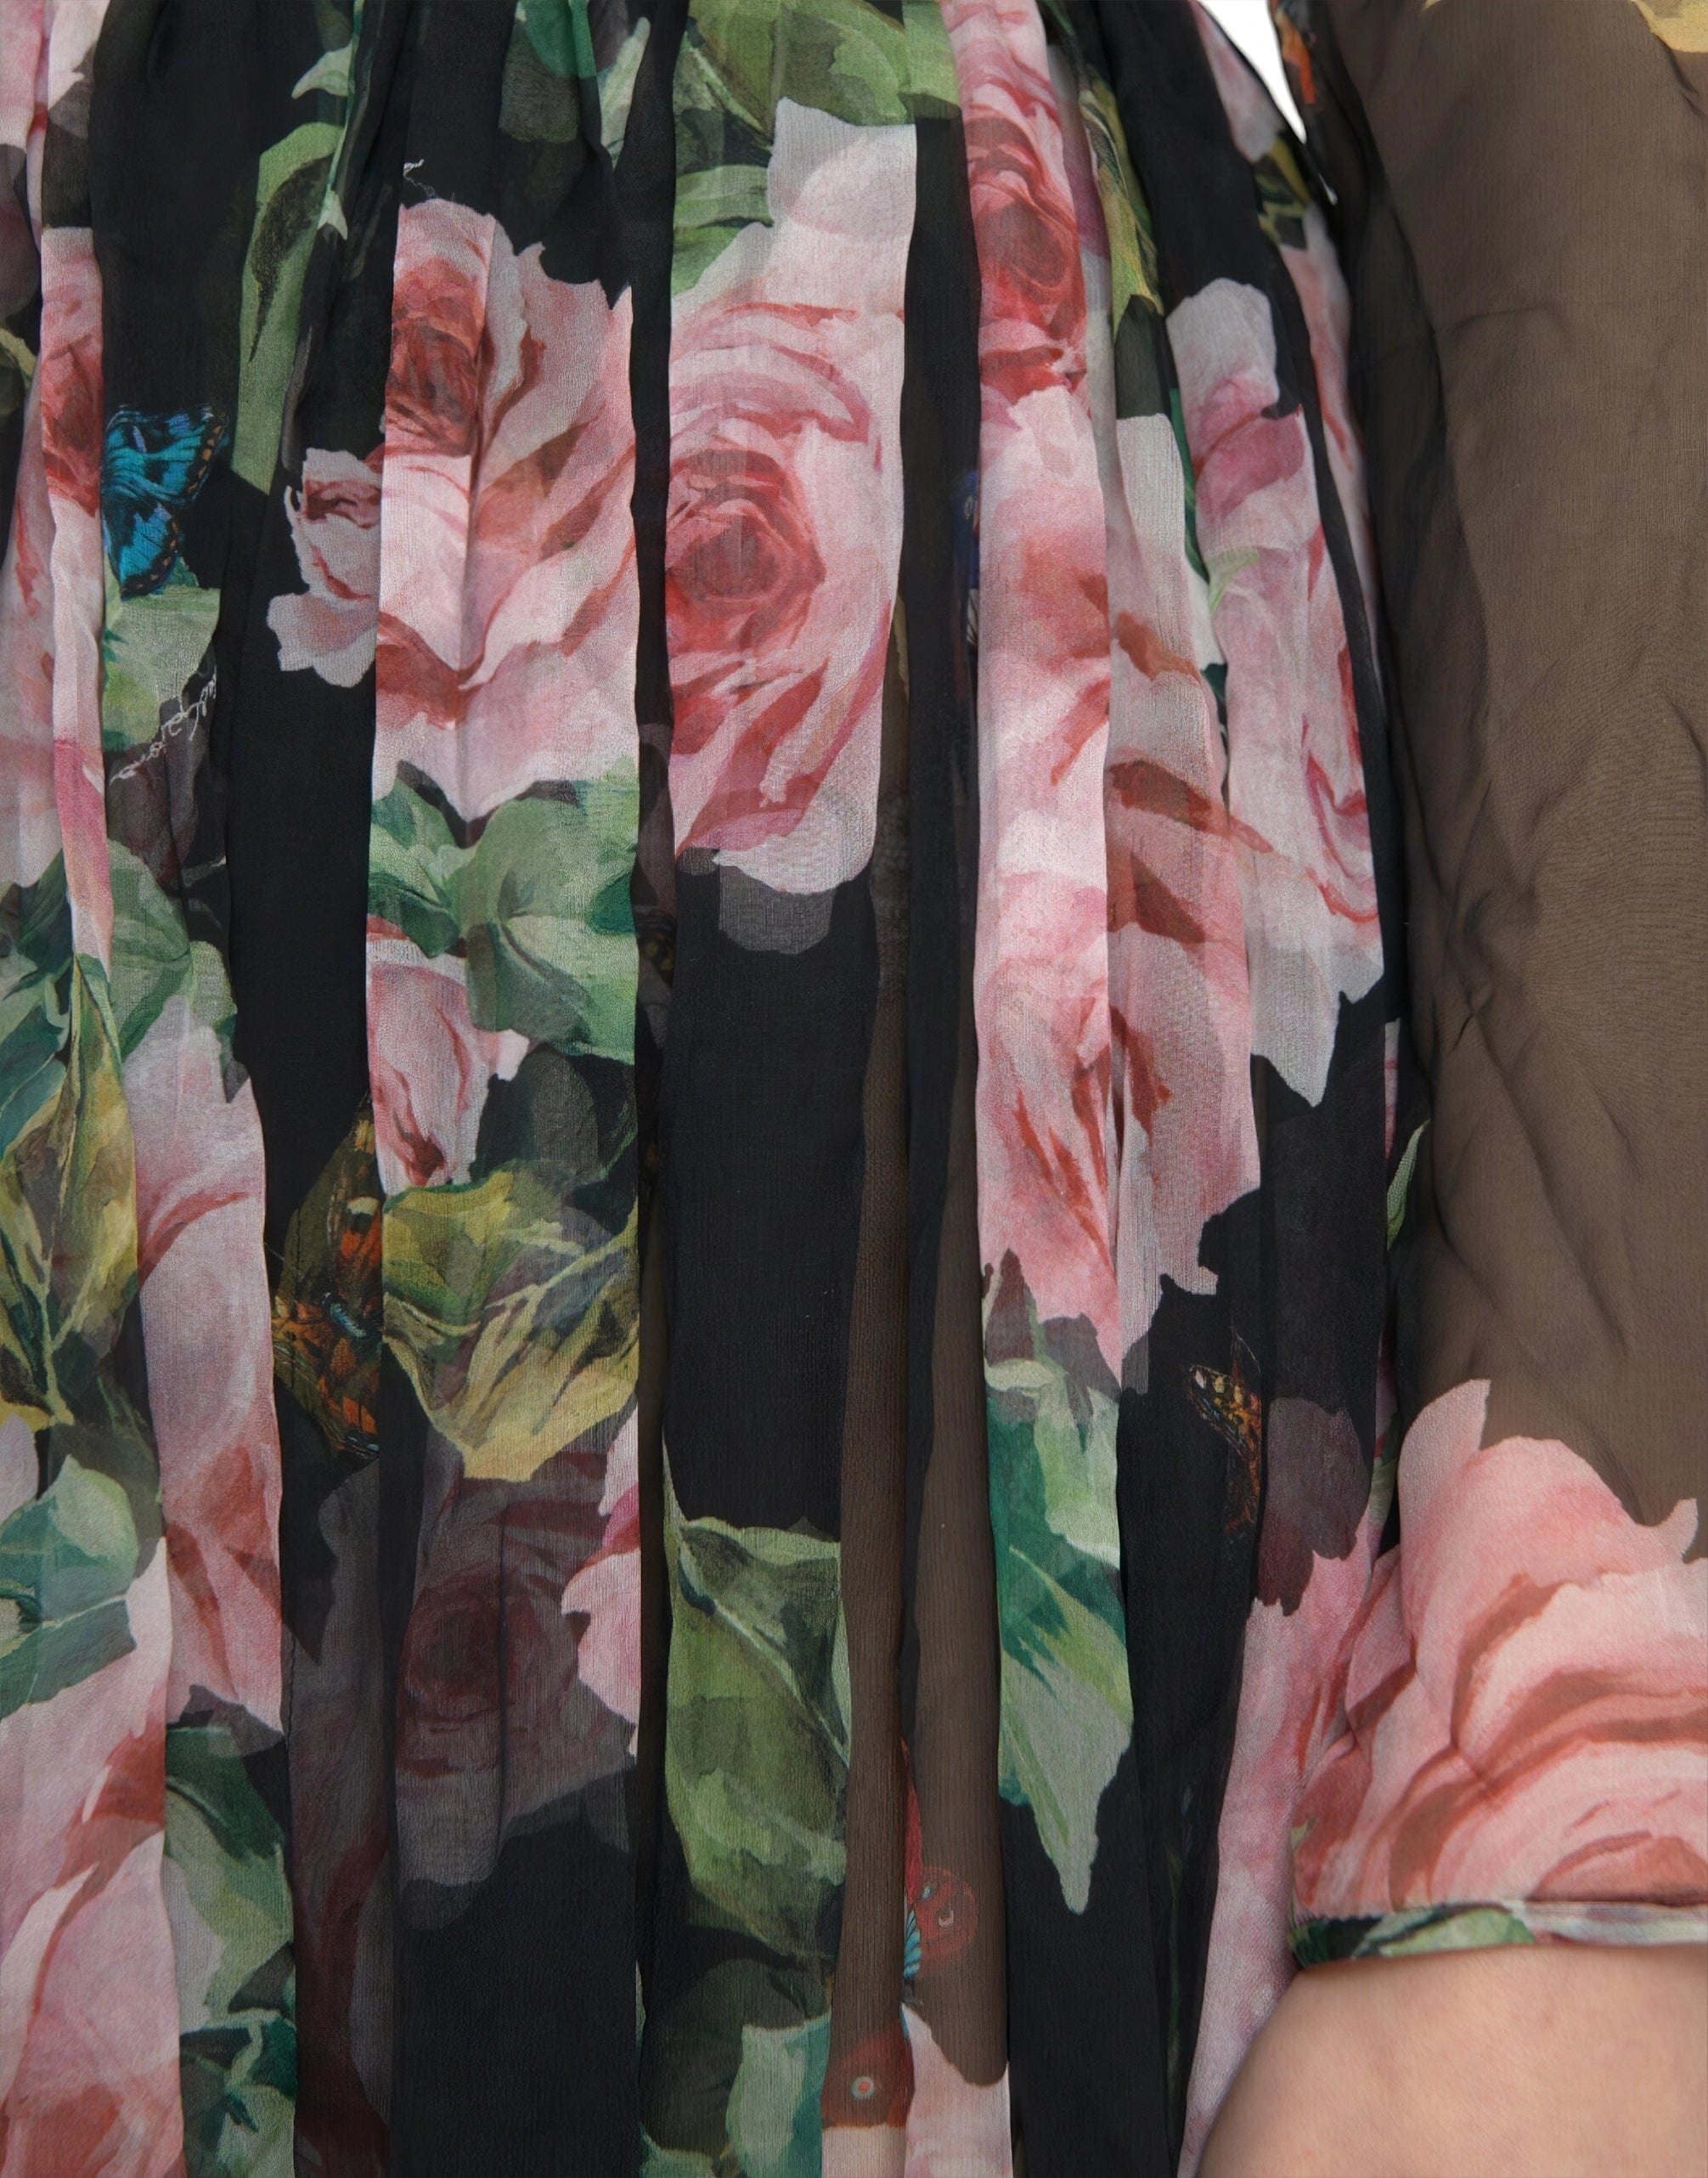 Dolce & Gabbana Silk Floral Maxi Dress